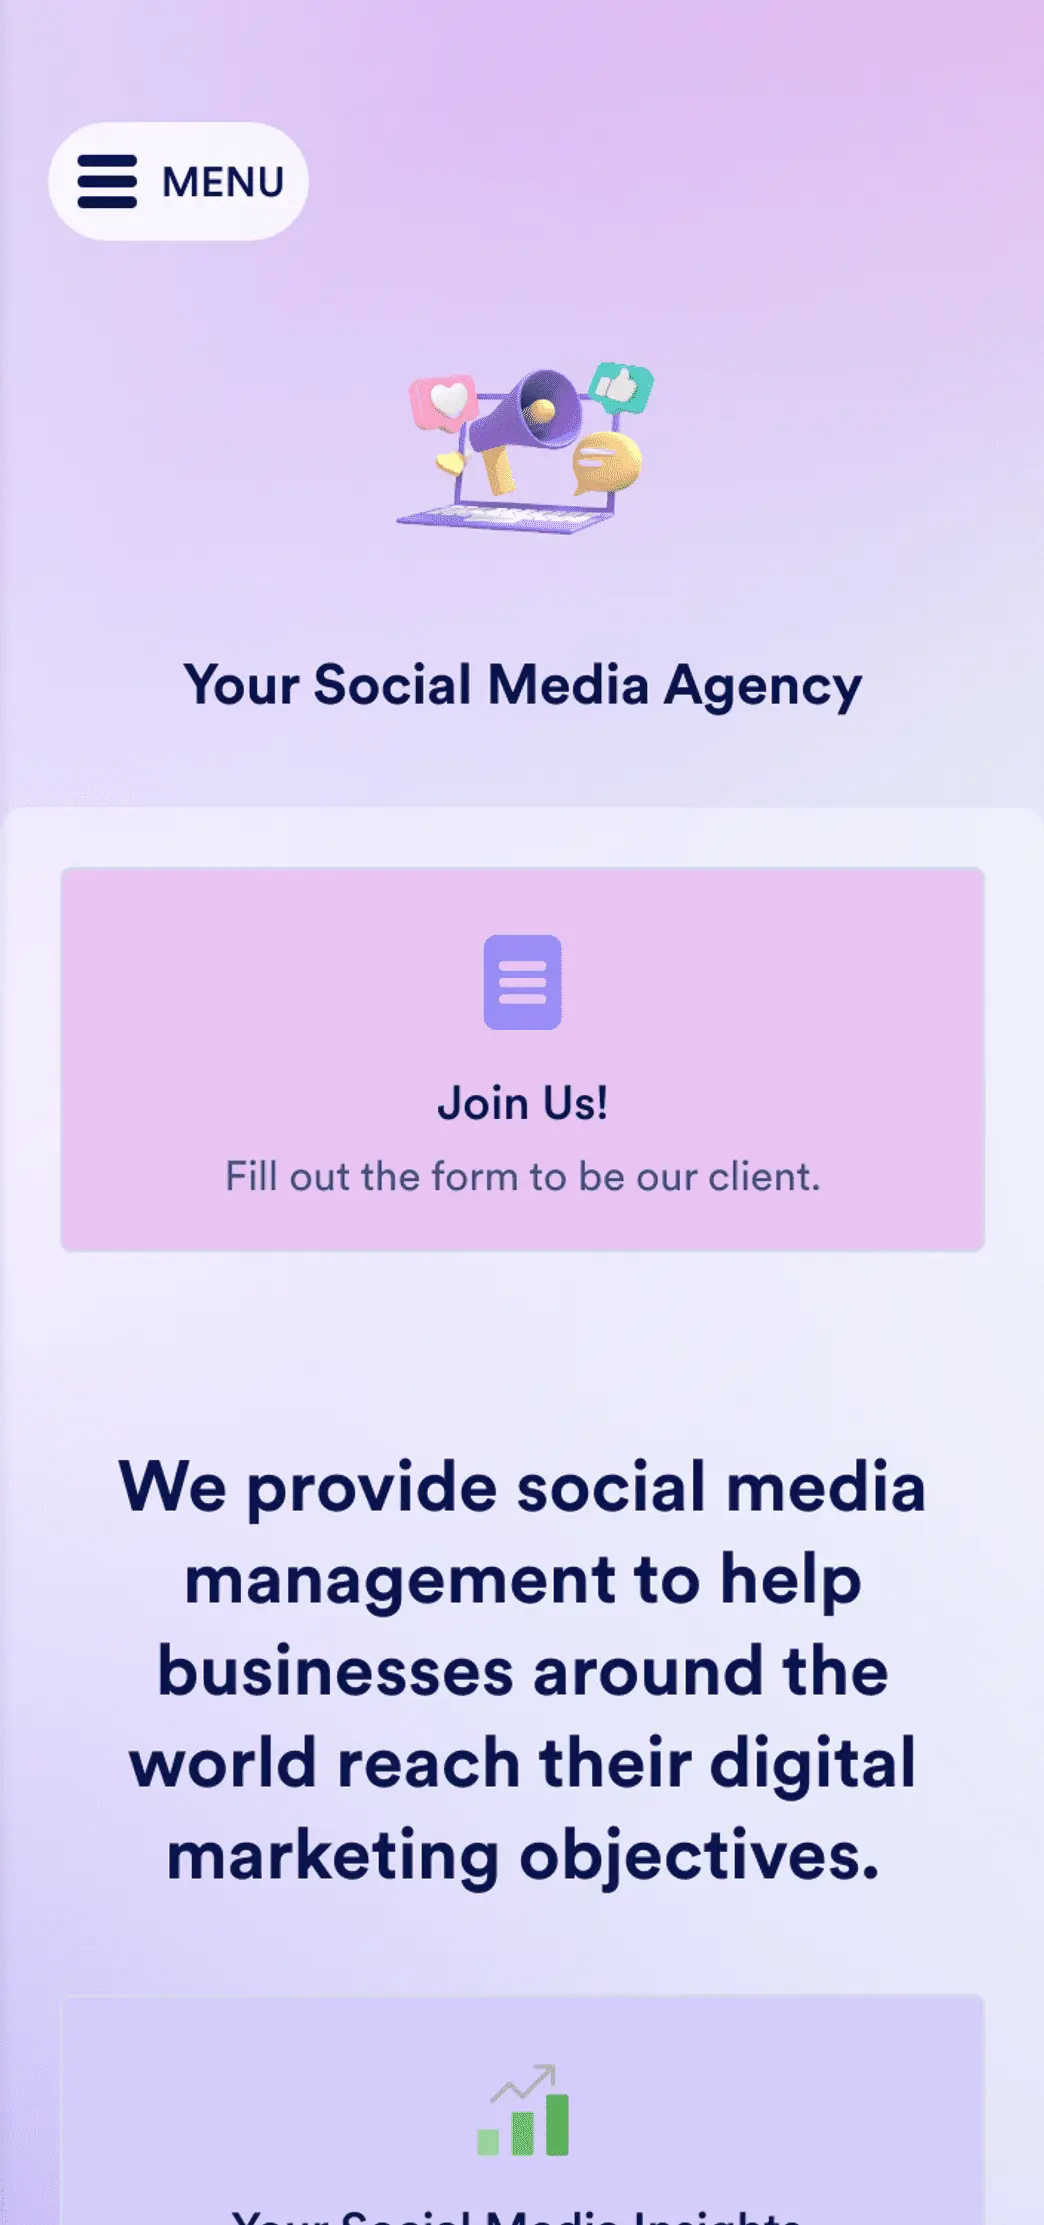 Social Media Marketing App